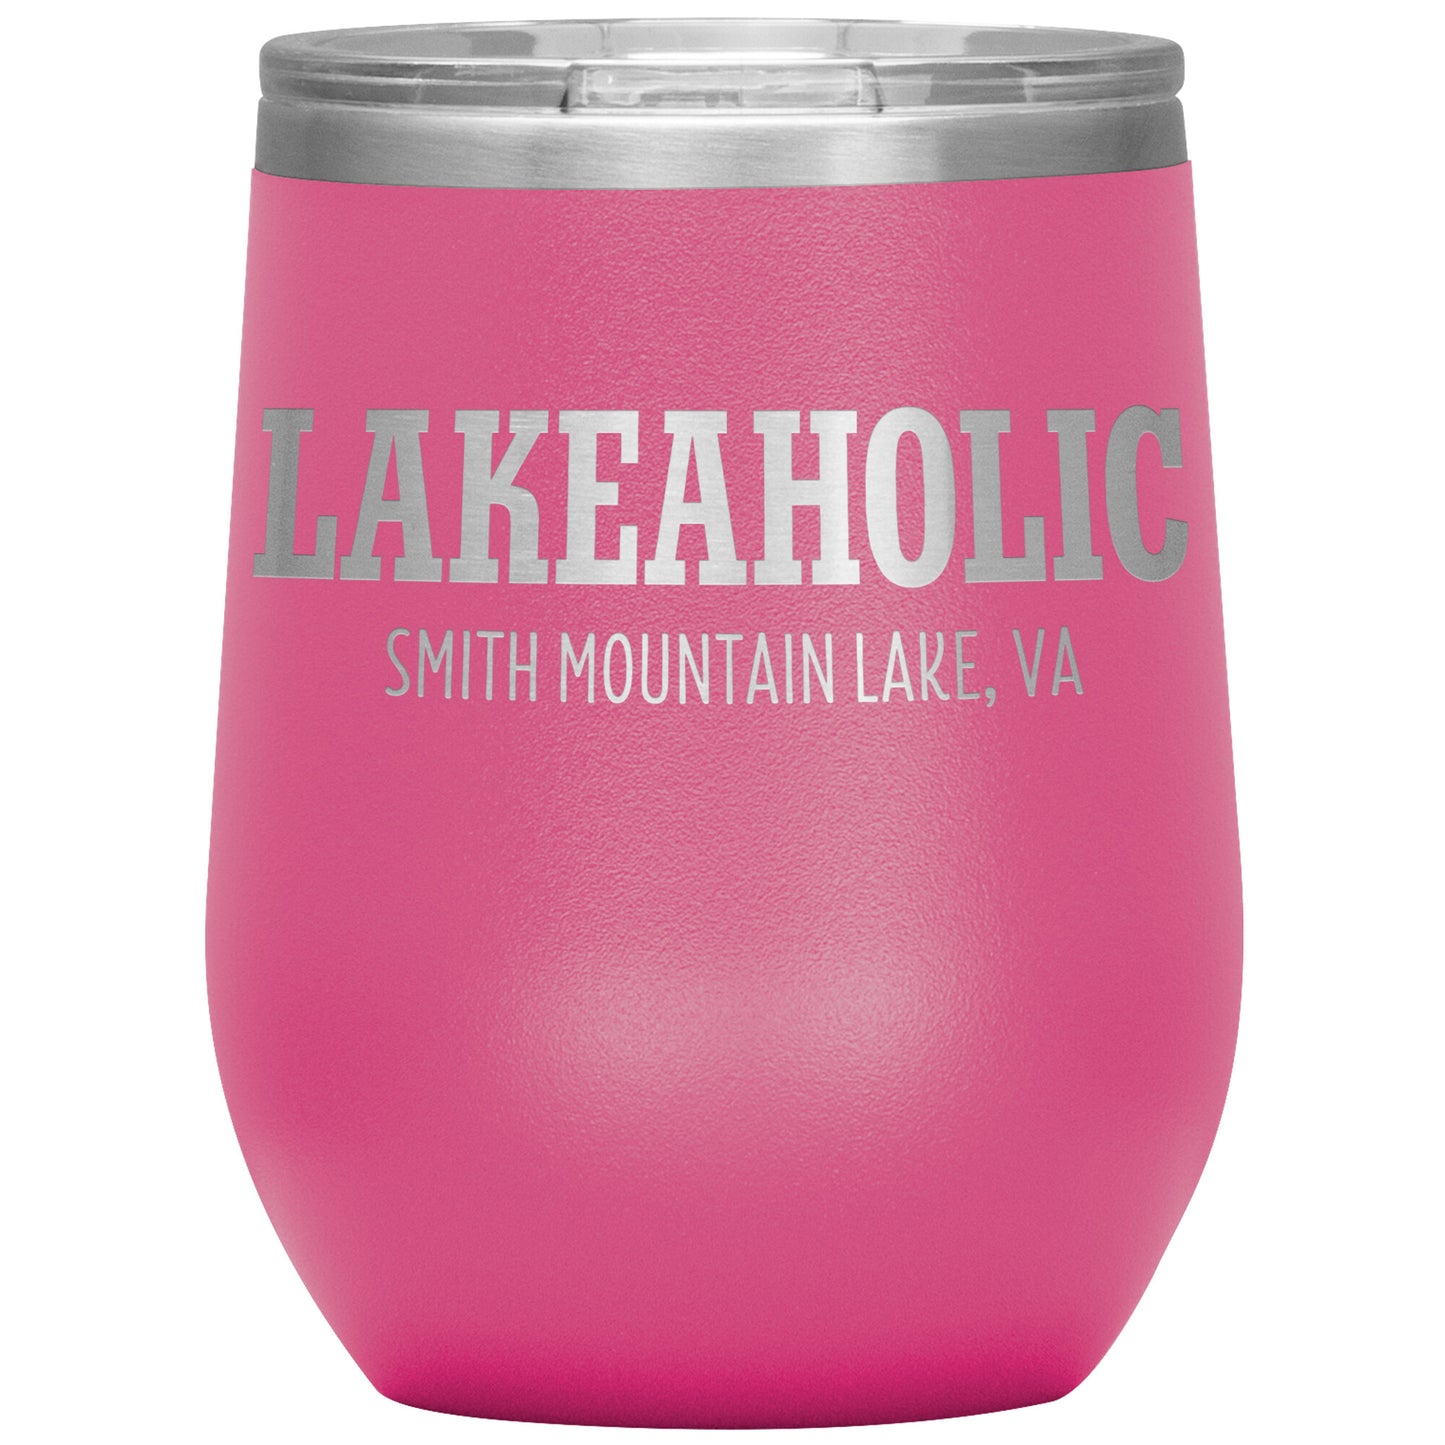 Lakeaholic Smith Mountain Lake - Laser Etched 12oz Wine Tumbler